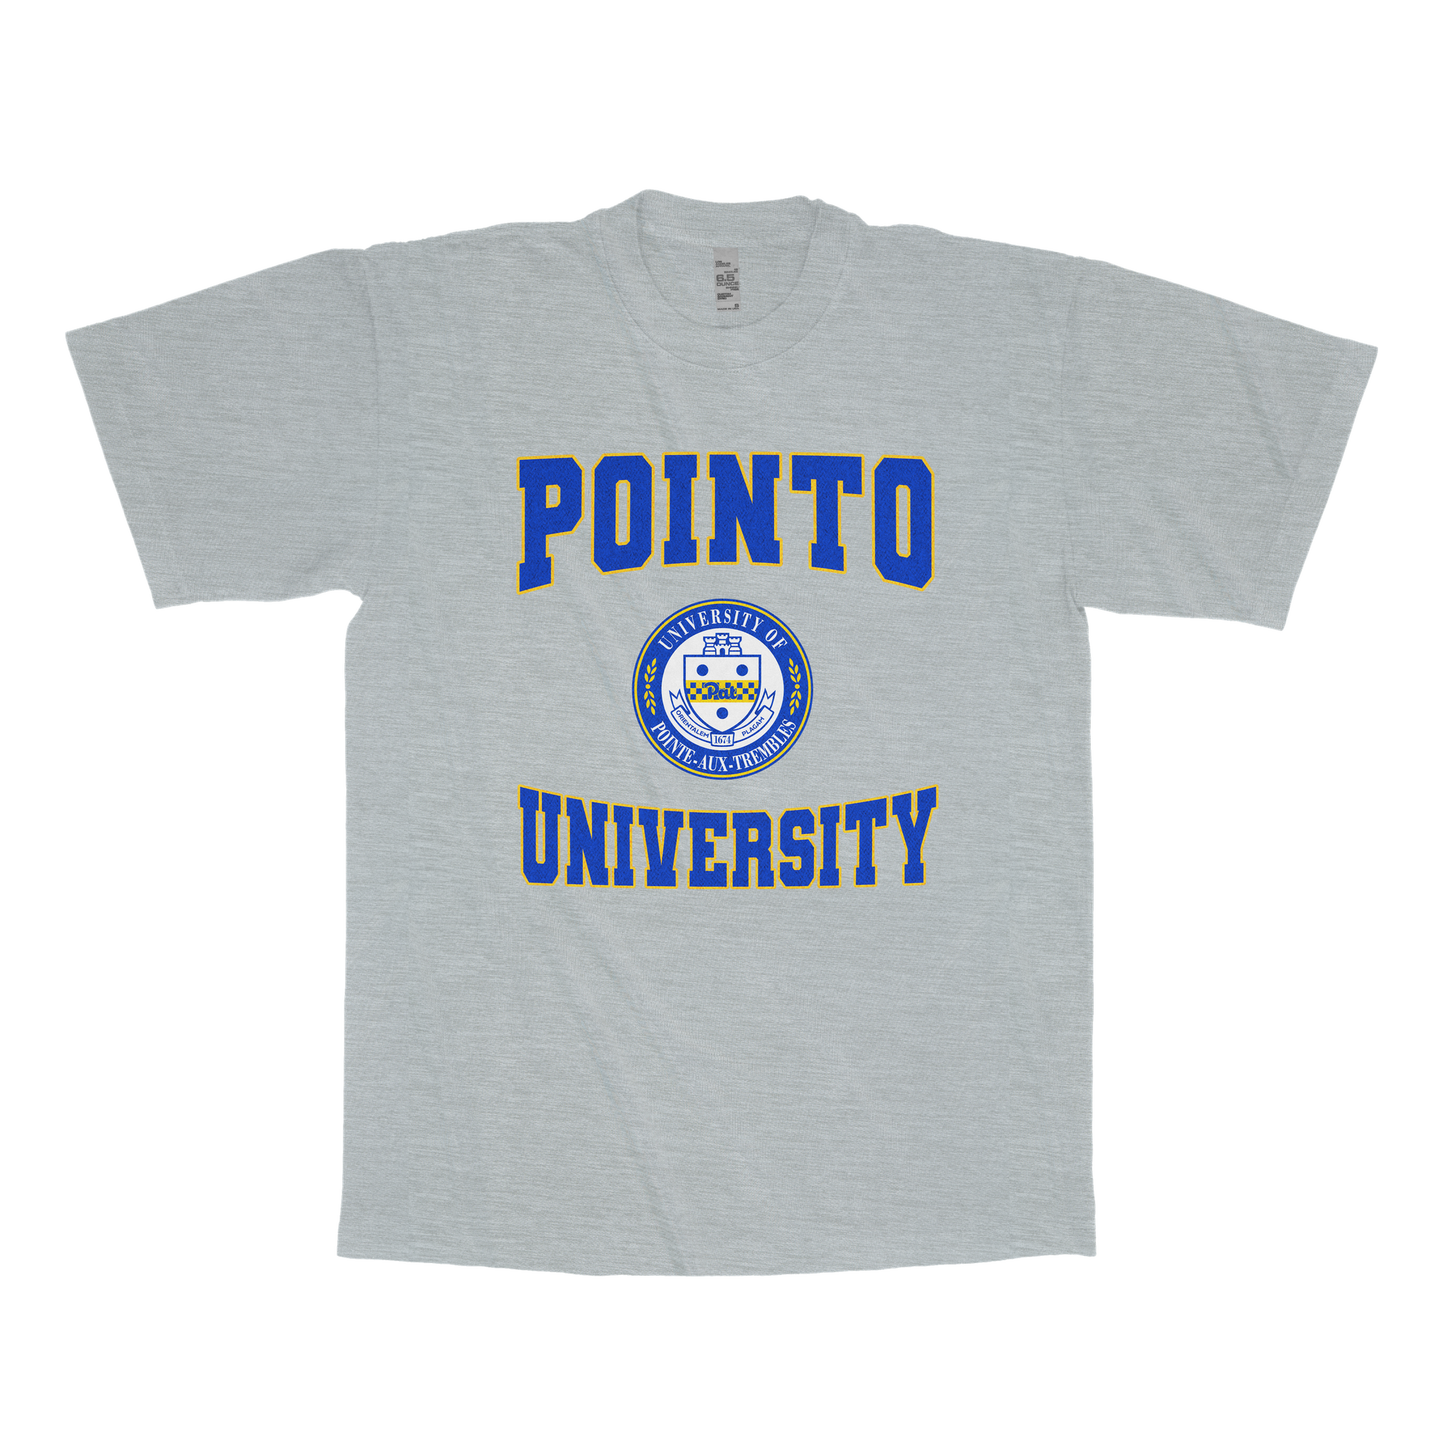 Pointe-aux-Trembles (PAT) University (FAKE U T-Shirt)